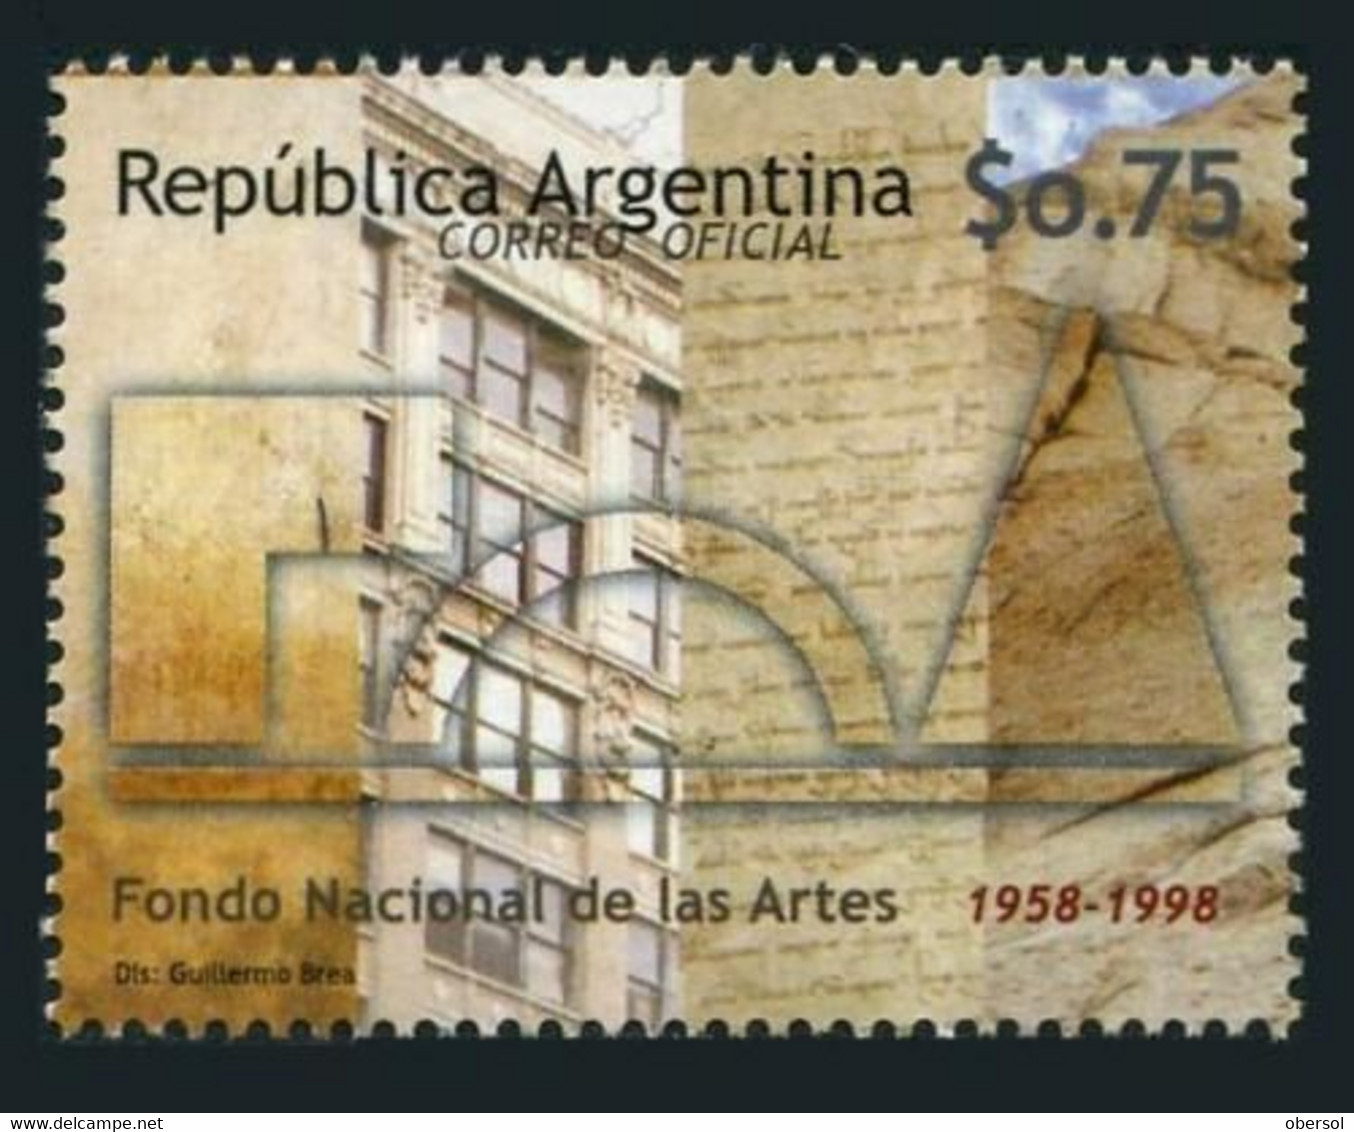 Argentina 1999 National Arts Fund MNH Stamp - Ungebraucht